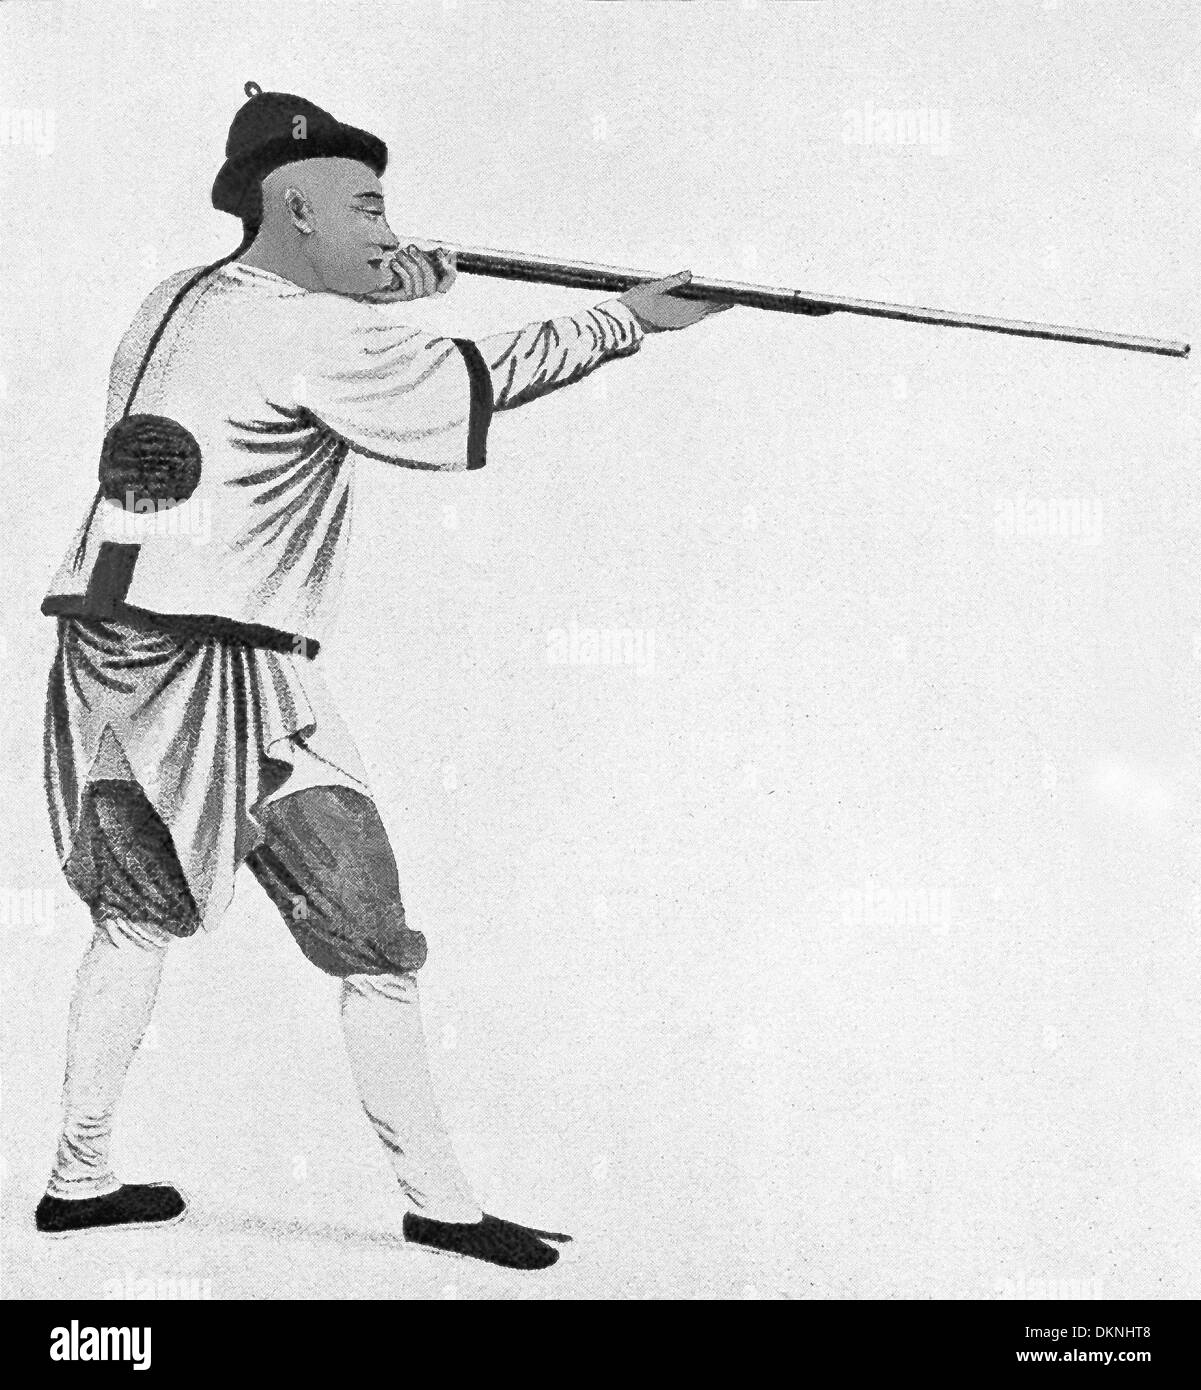 Questa illustrazione di un soldato cinese, puntando la sua pistola, risale al 1900. Il periodo di tempo in Cina è il Boxer Rebellion. Foto Stock